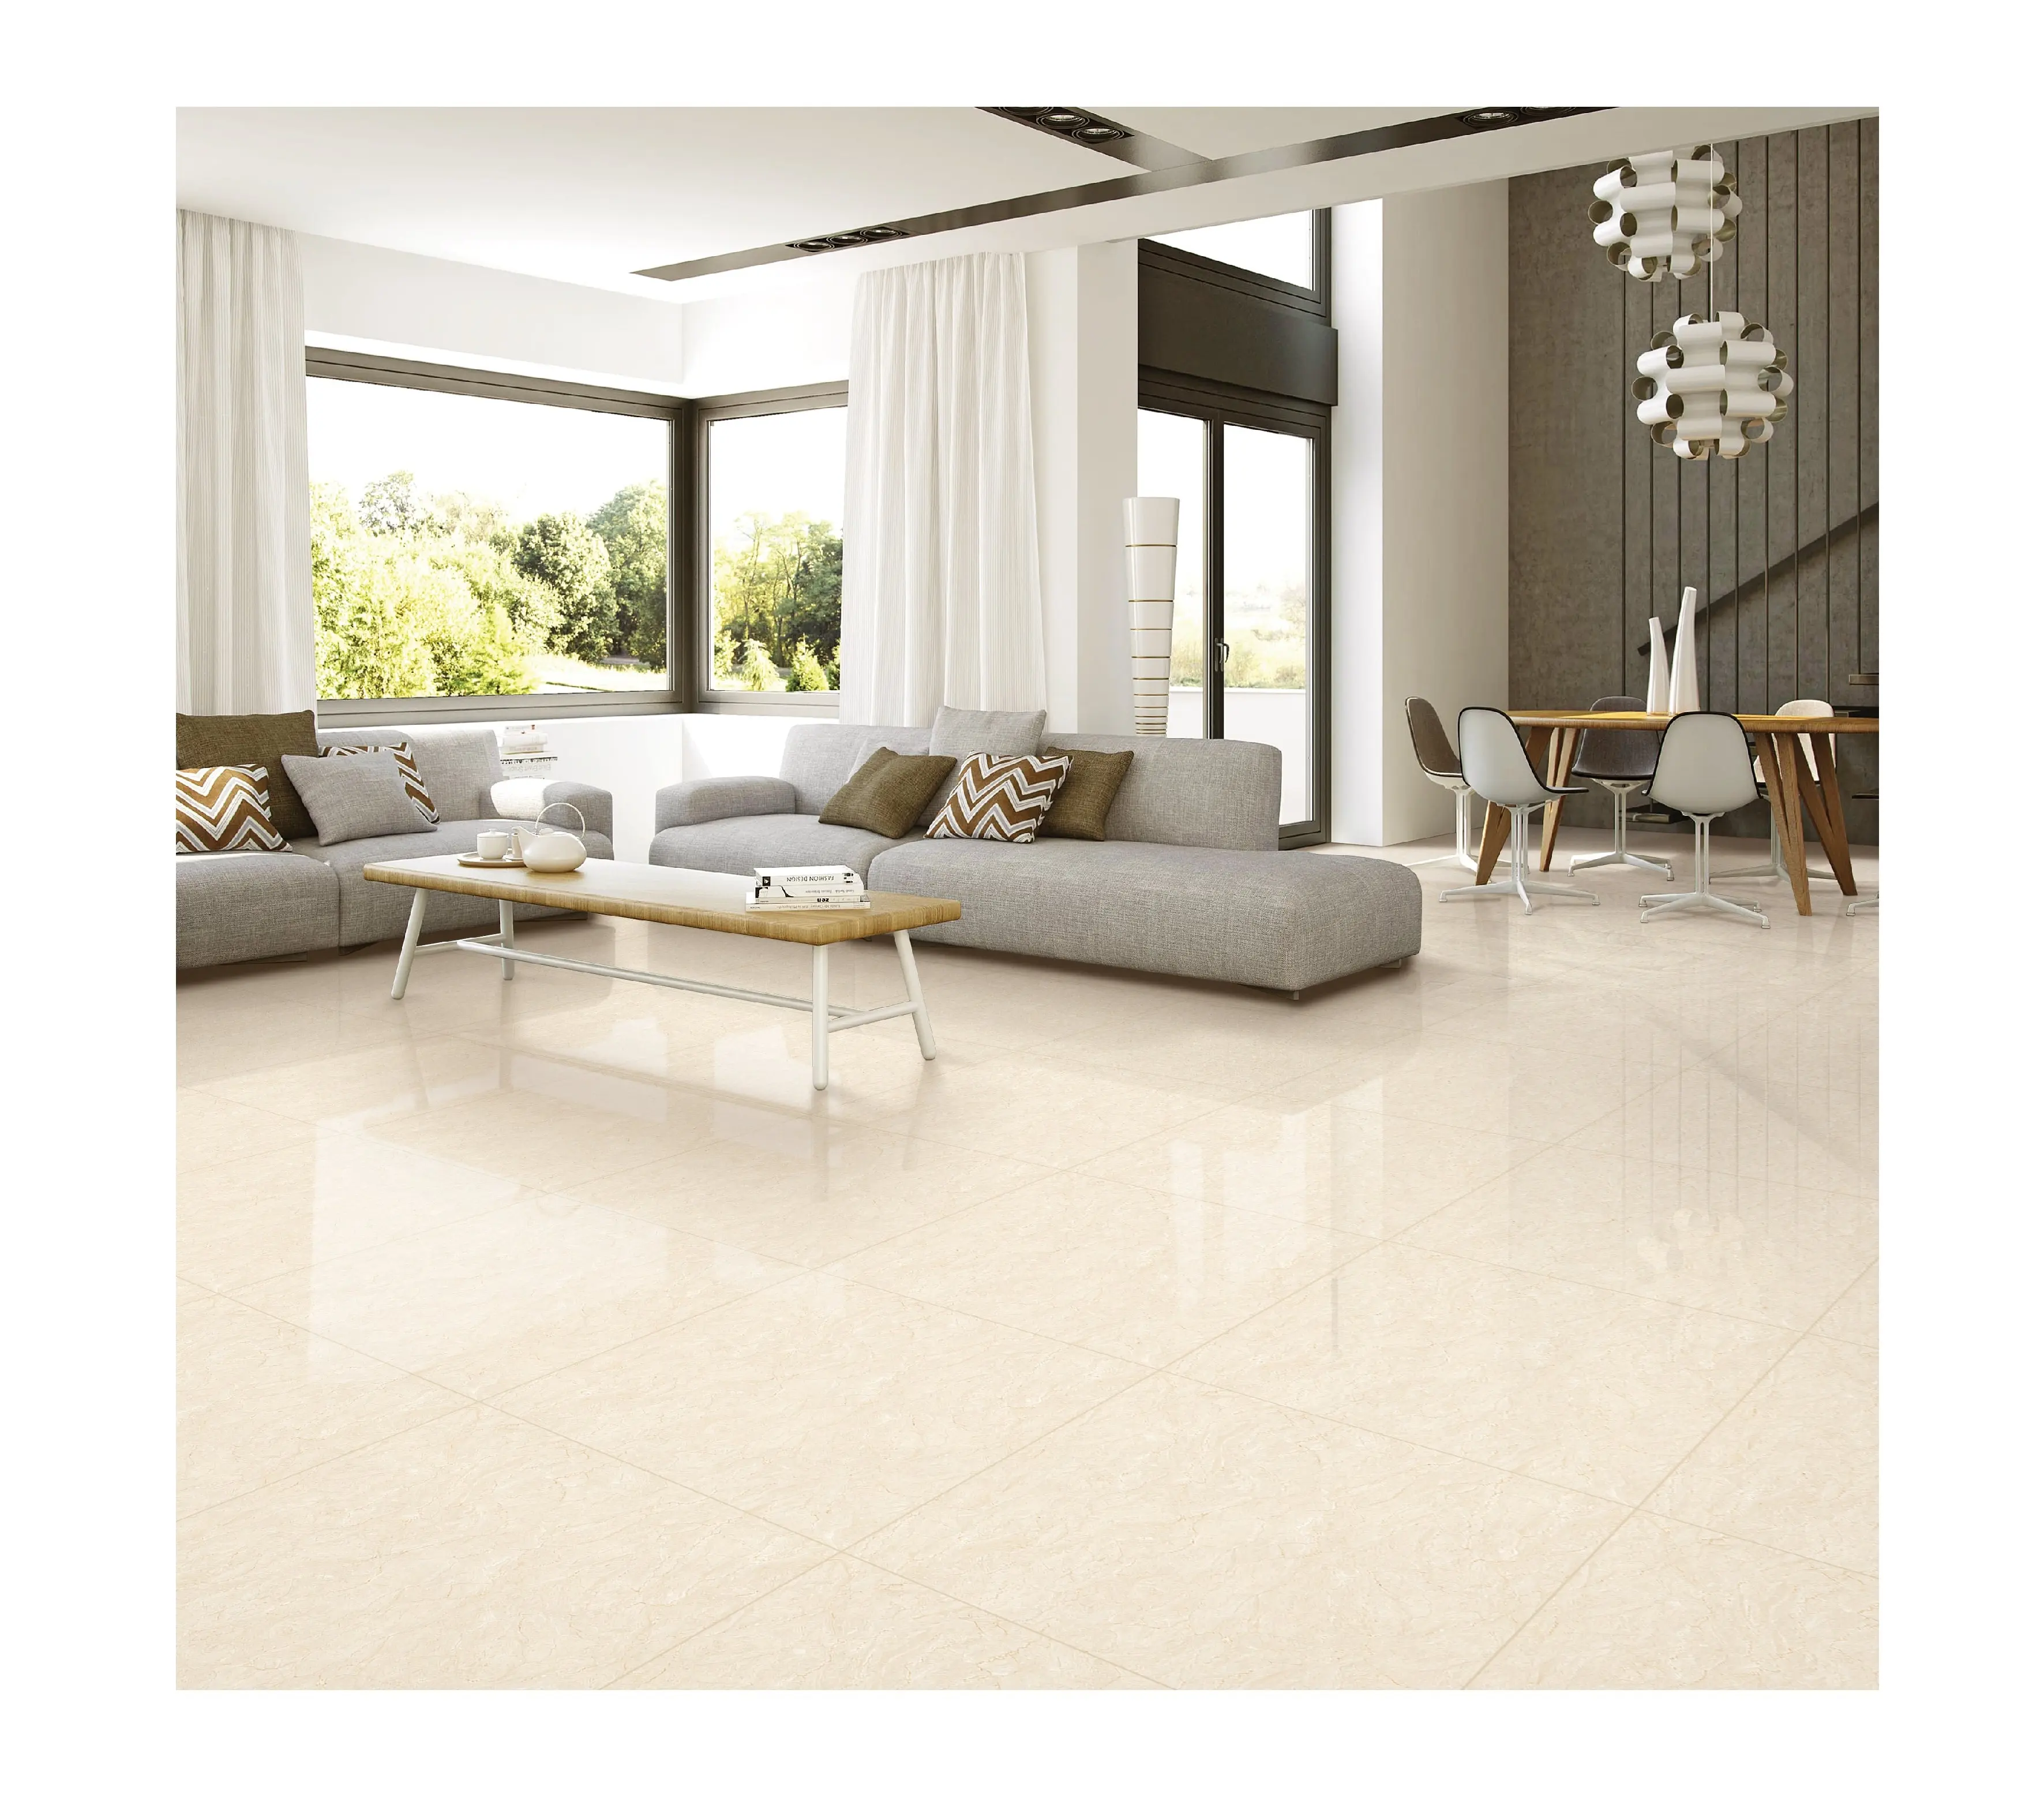 Italia beige european porcelain tiles 24"X24" shiny glazed floor tile & 600x600 glossy tiles popular in America market 60x60cm